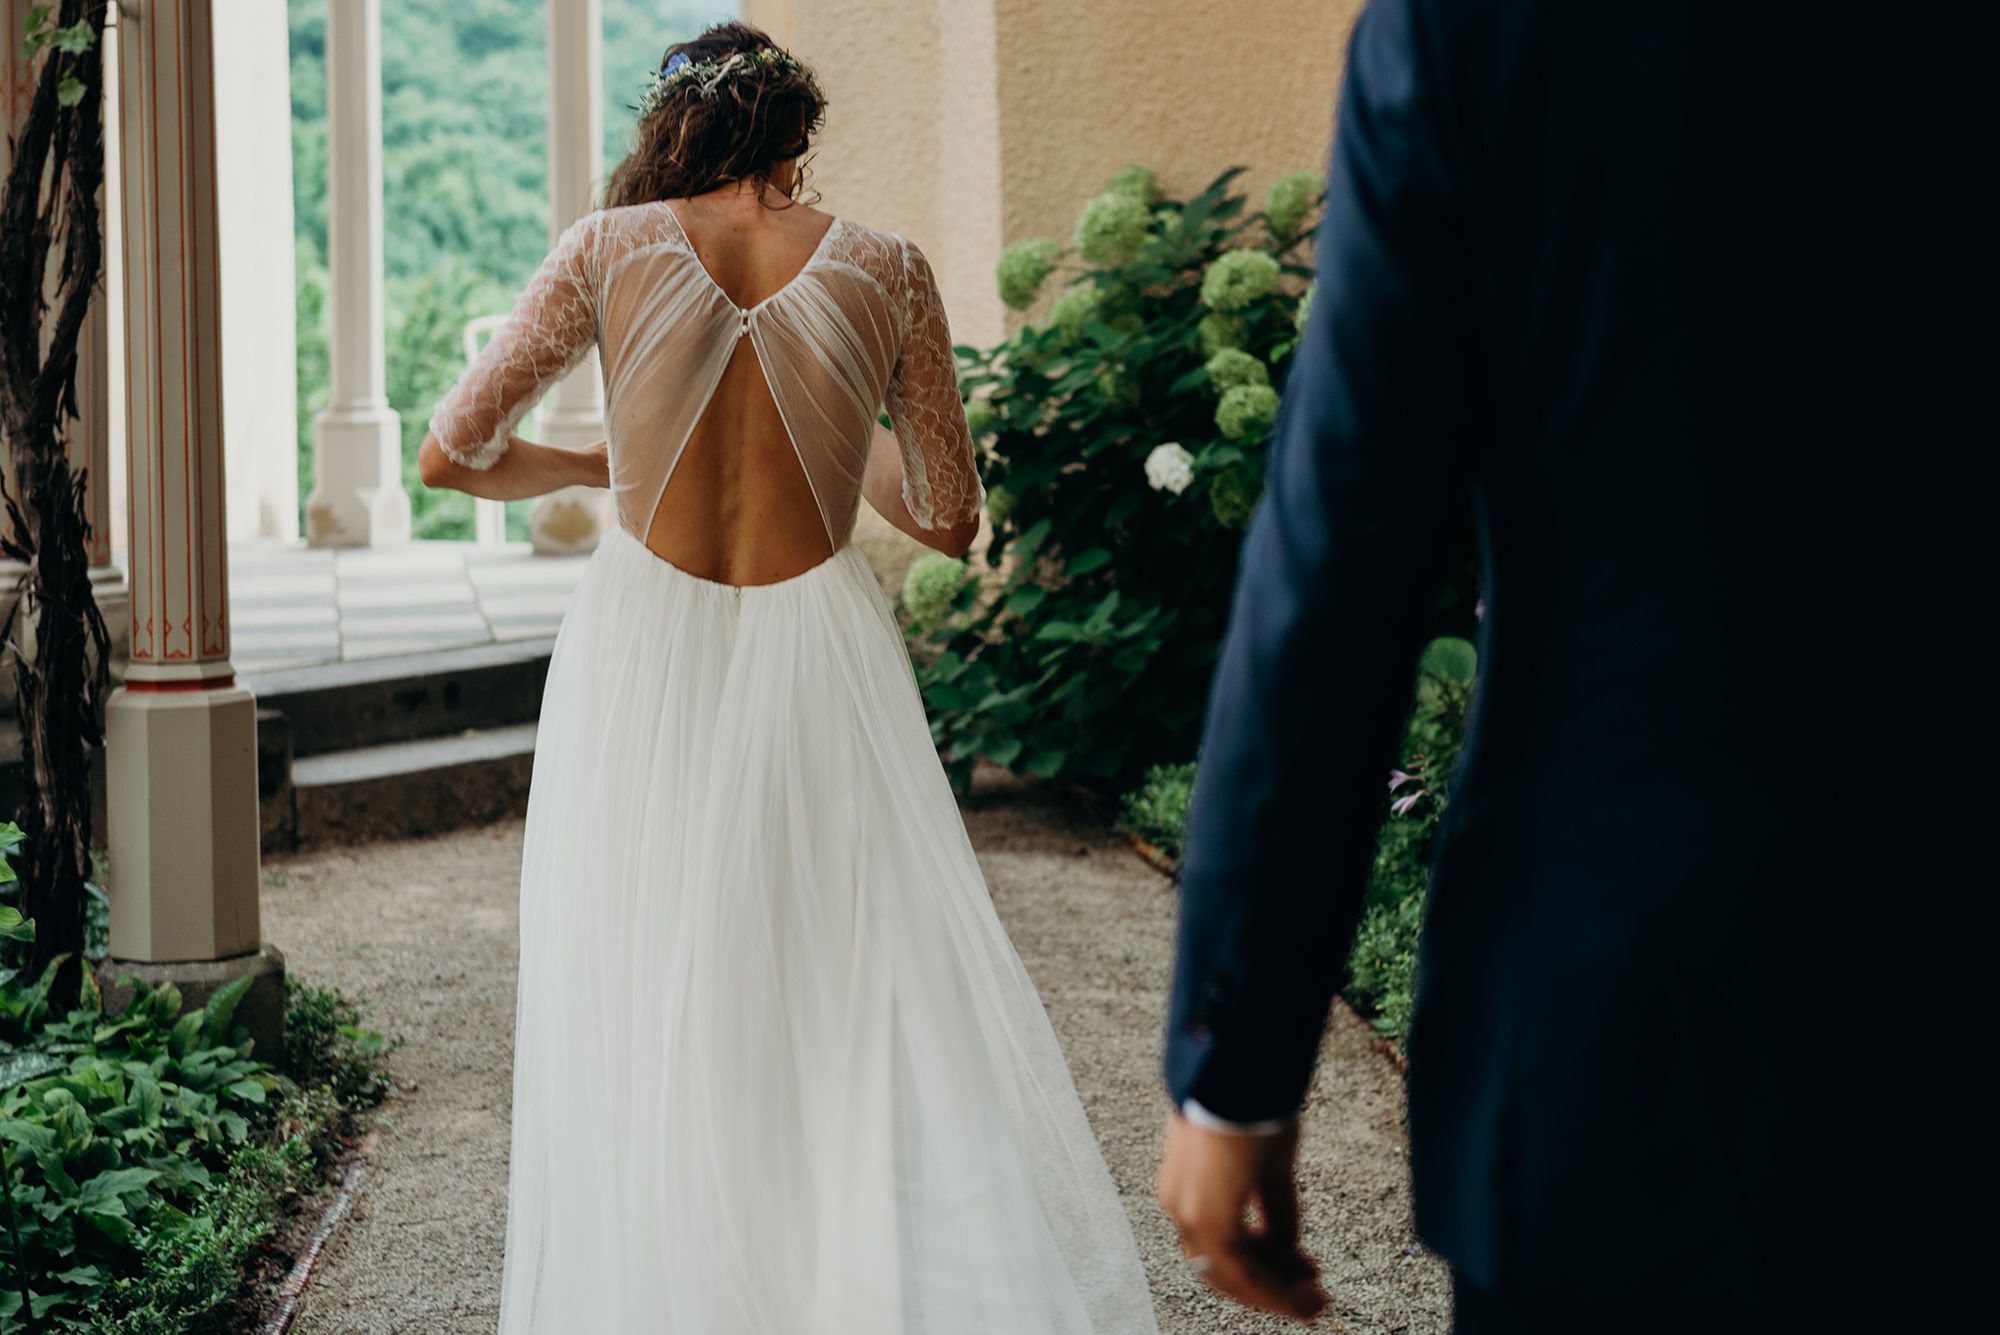 Frau in Brautkleid von hinten mit Rückenausschnitt